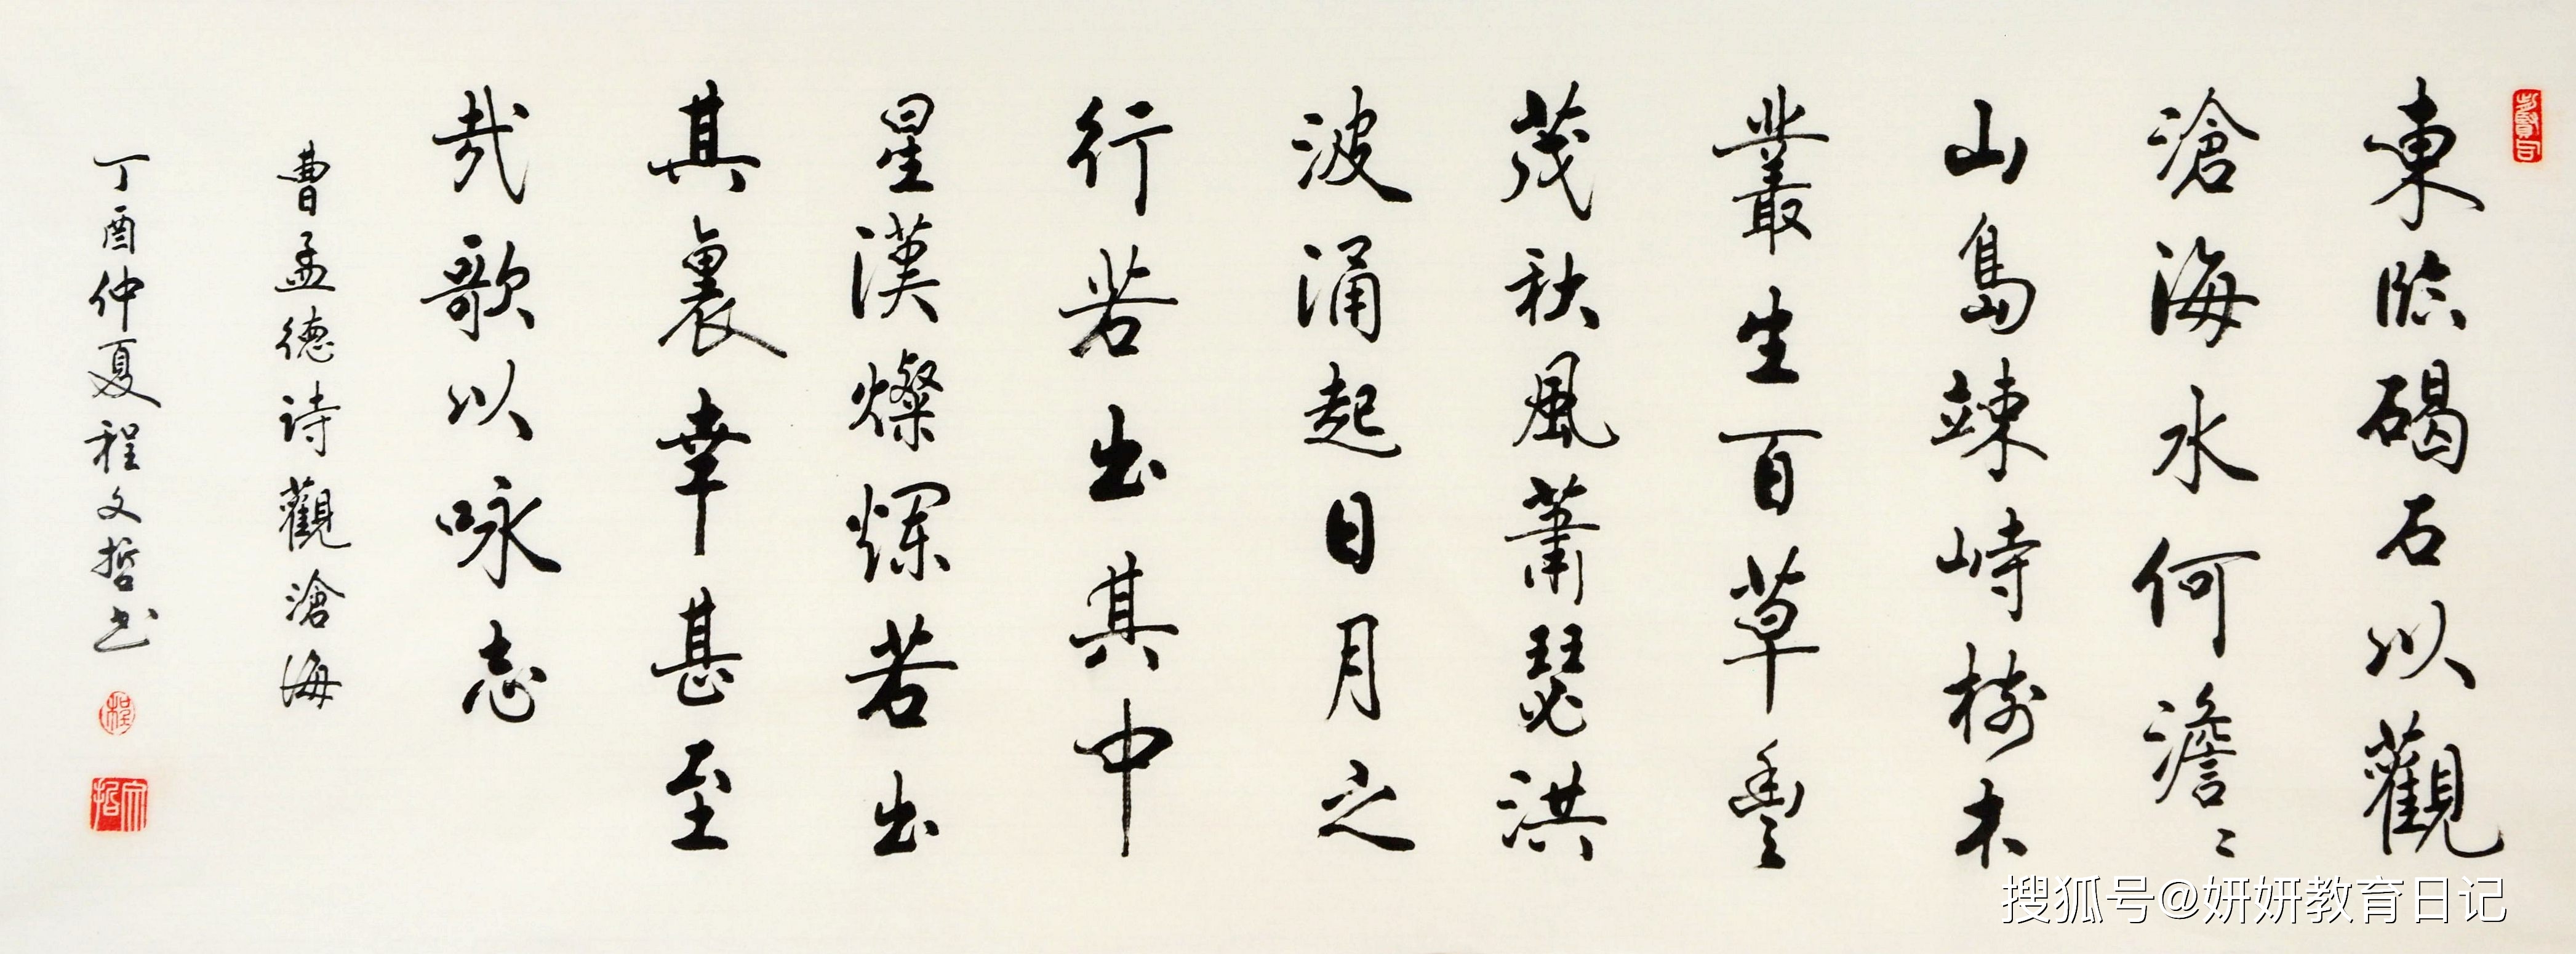 鲸落字体 走红 风格唯美又可爱 比奶酪字体更受欢迎 汉字 全网搜